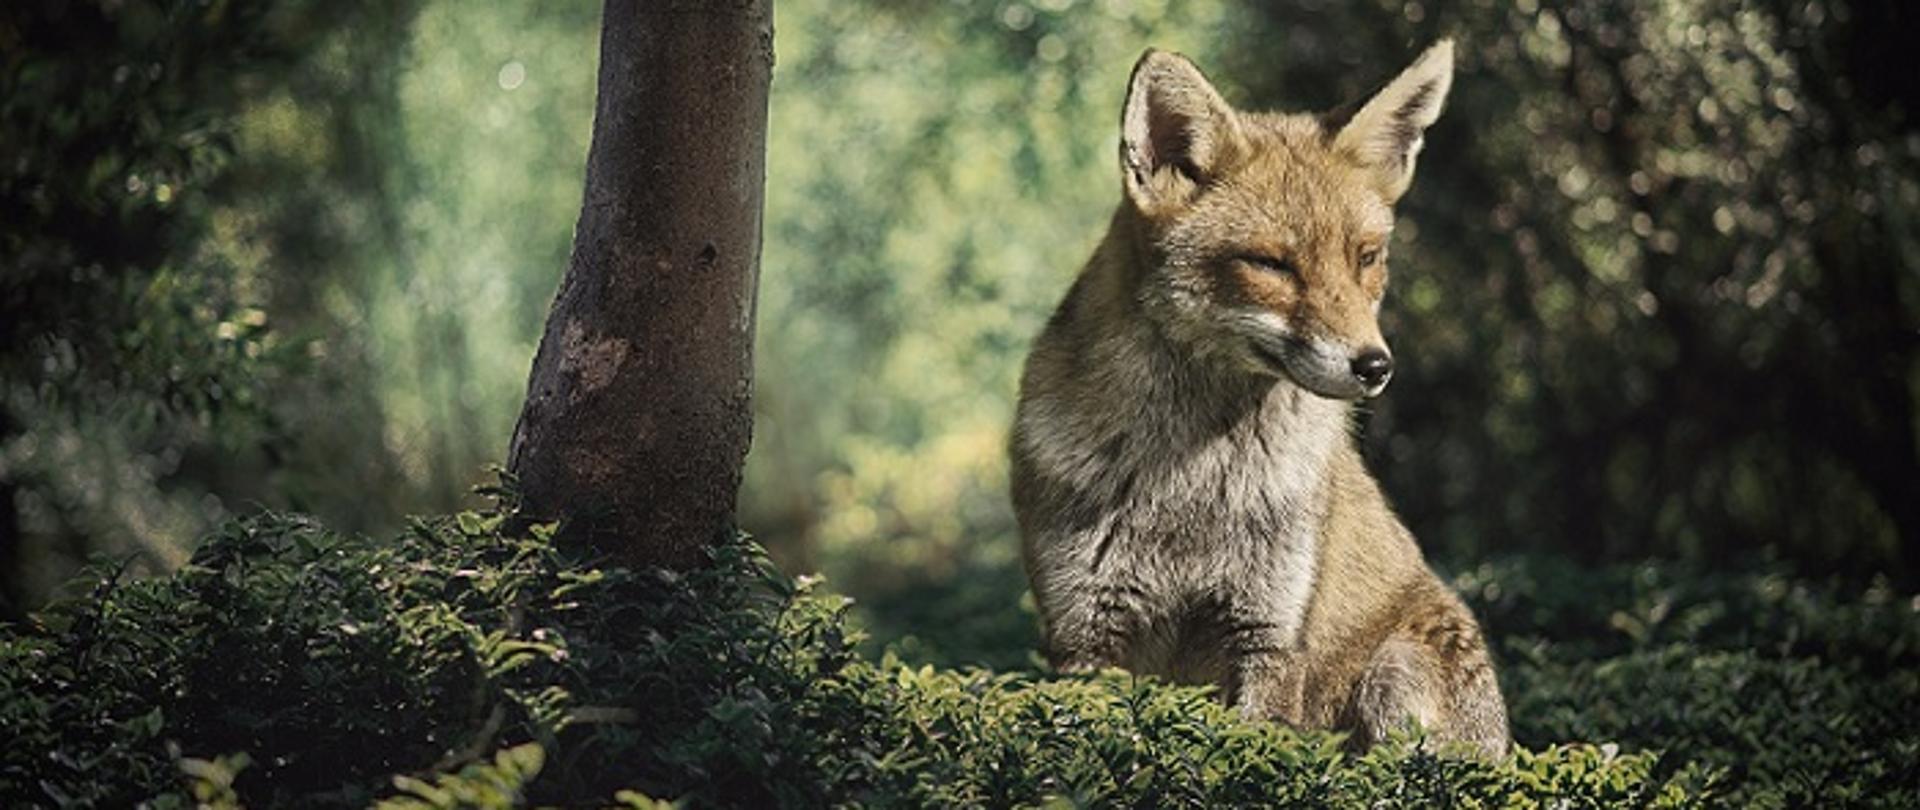 Zdjęcie przedstawia siedzącego lisa w lesie.